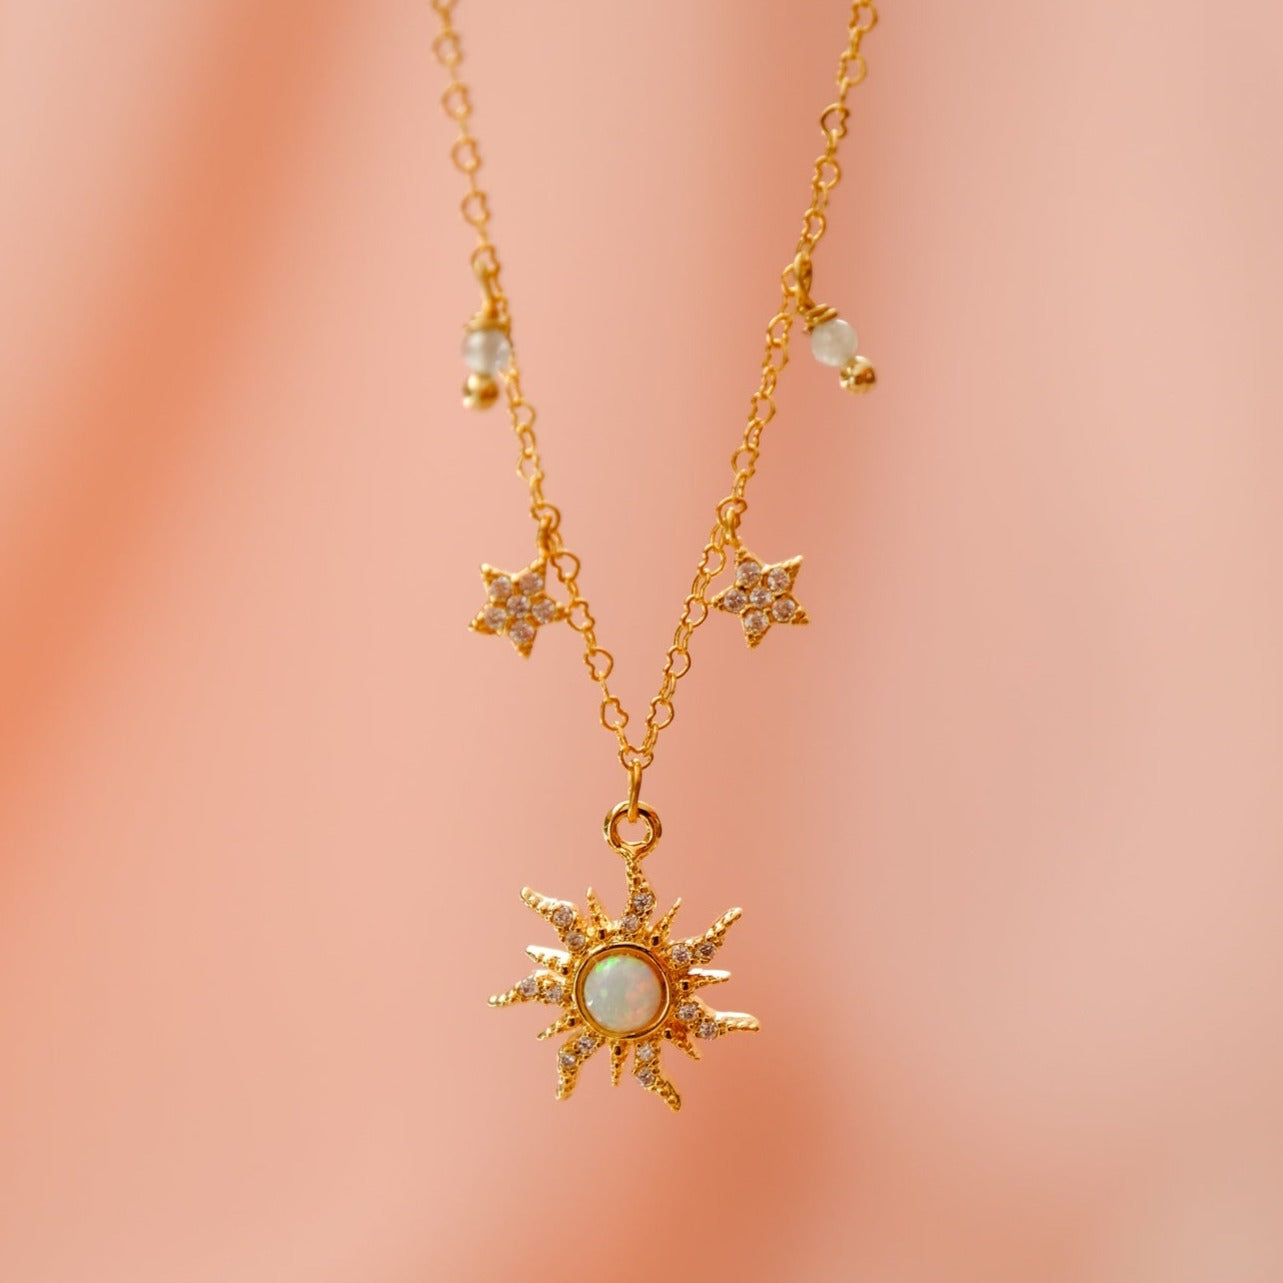 “Atlas” necklace